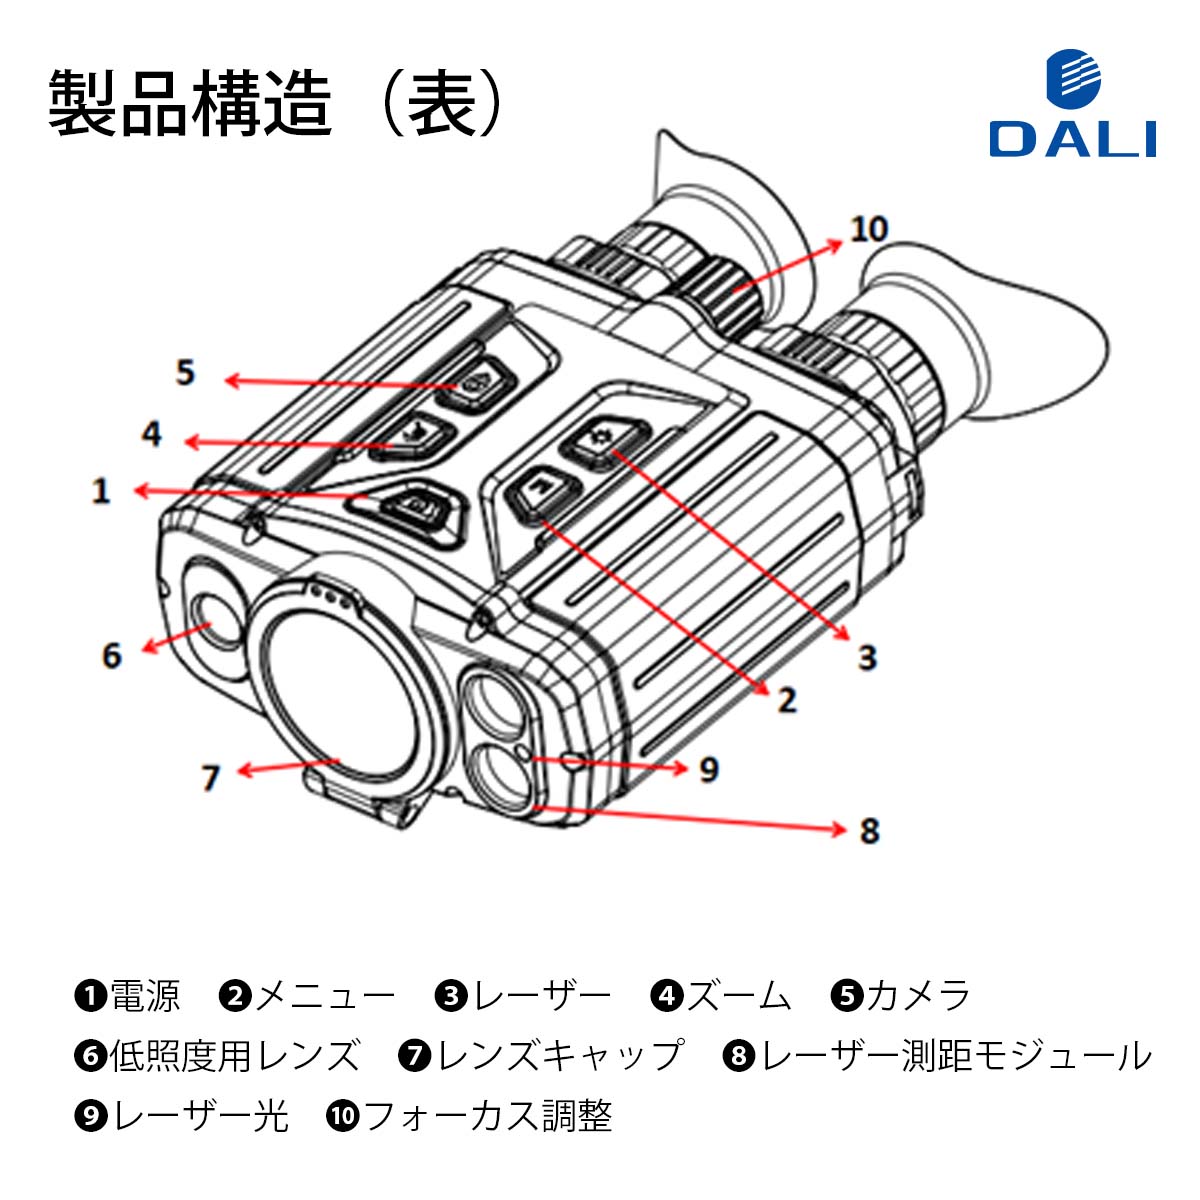 DALI MS715シリーズ サーマルイメージング双眼鏡 MS715P サーマルカメラ,サーマルカメラ本体 タイムテクノロジー公式ショップ